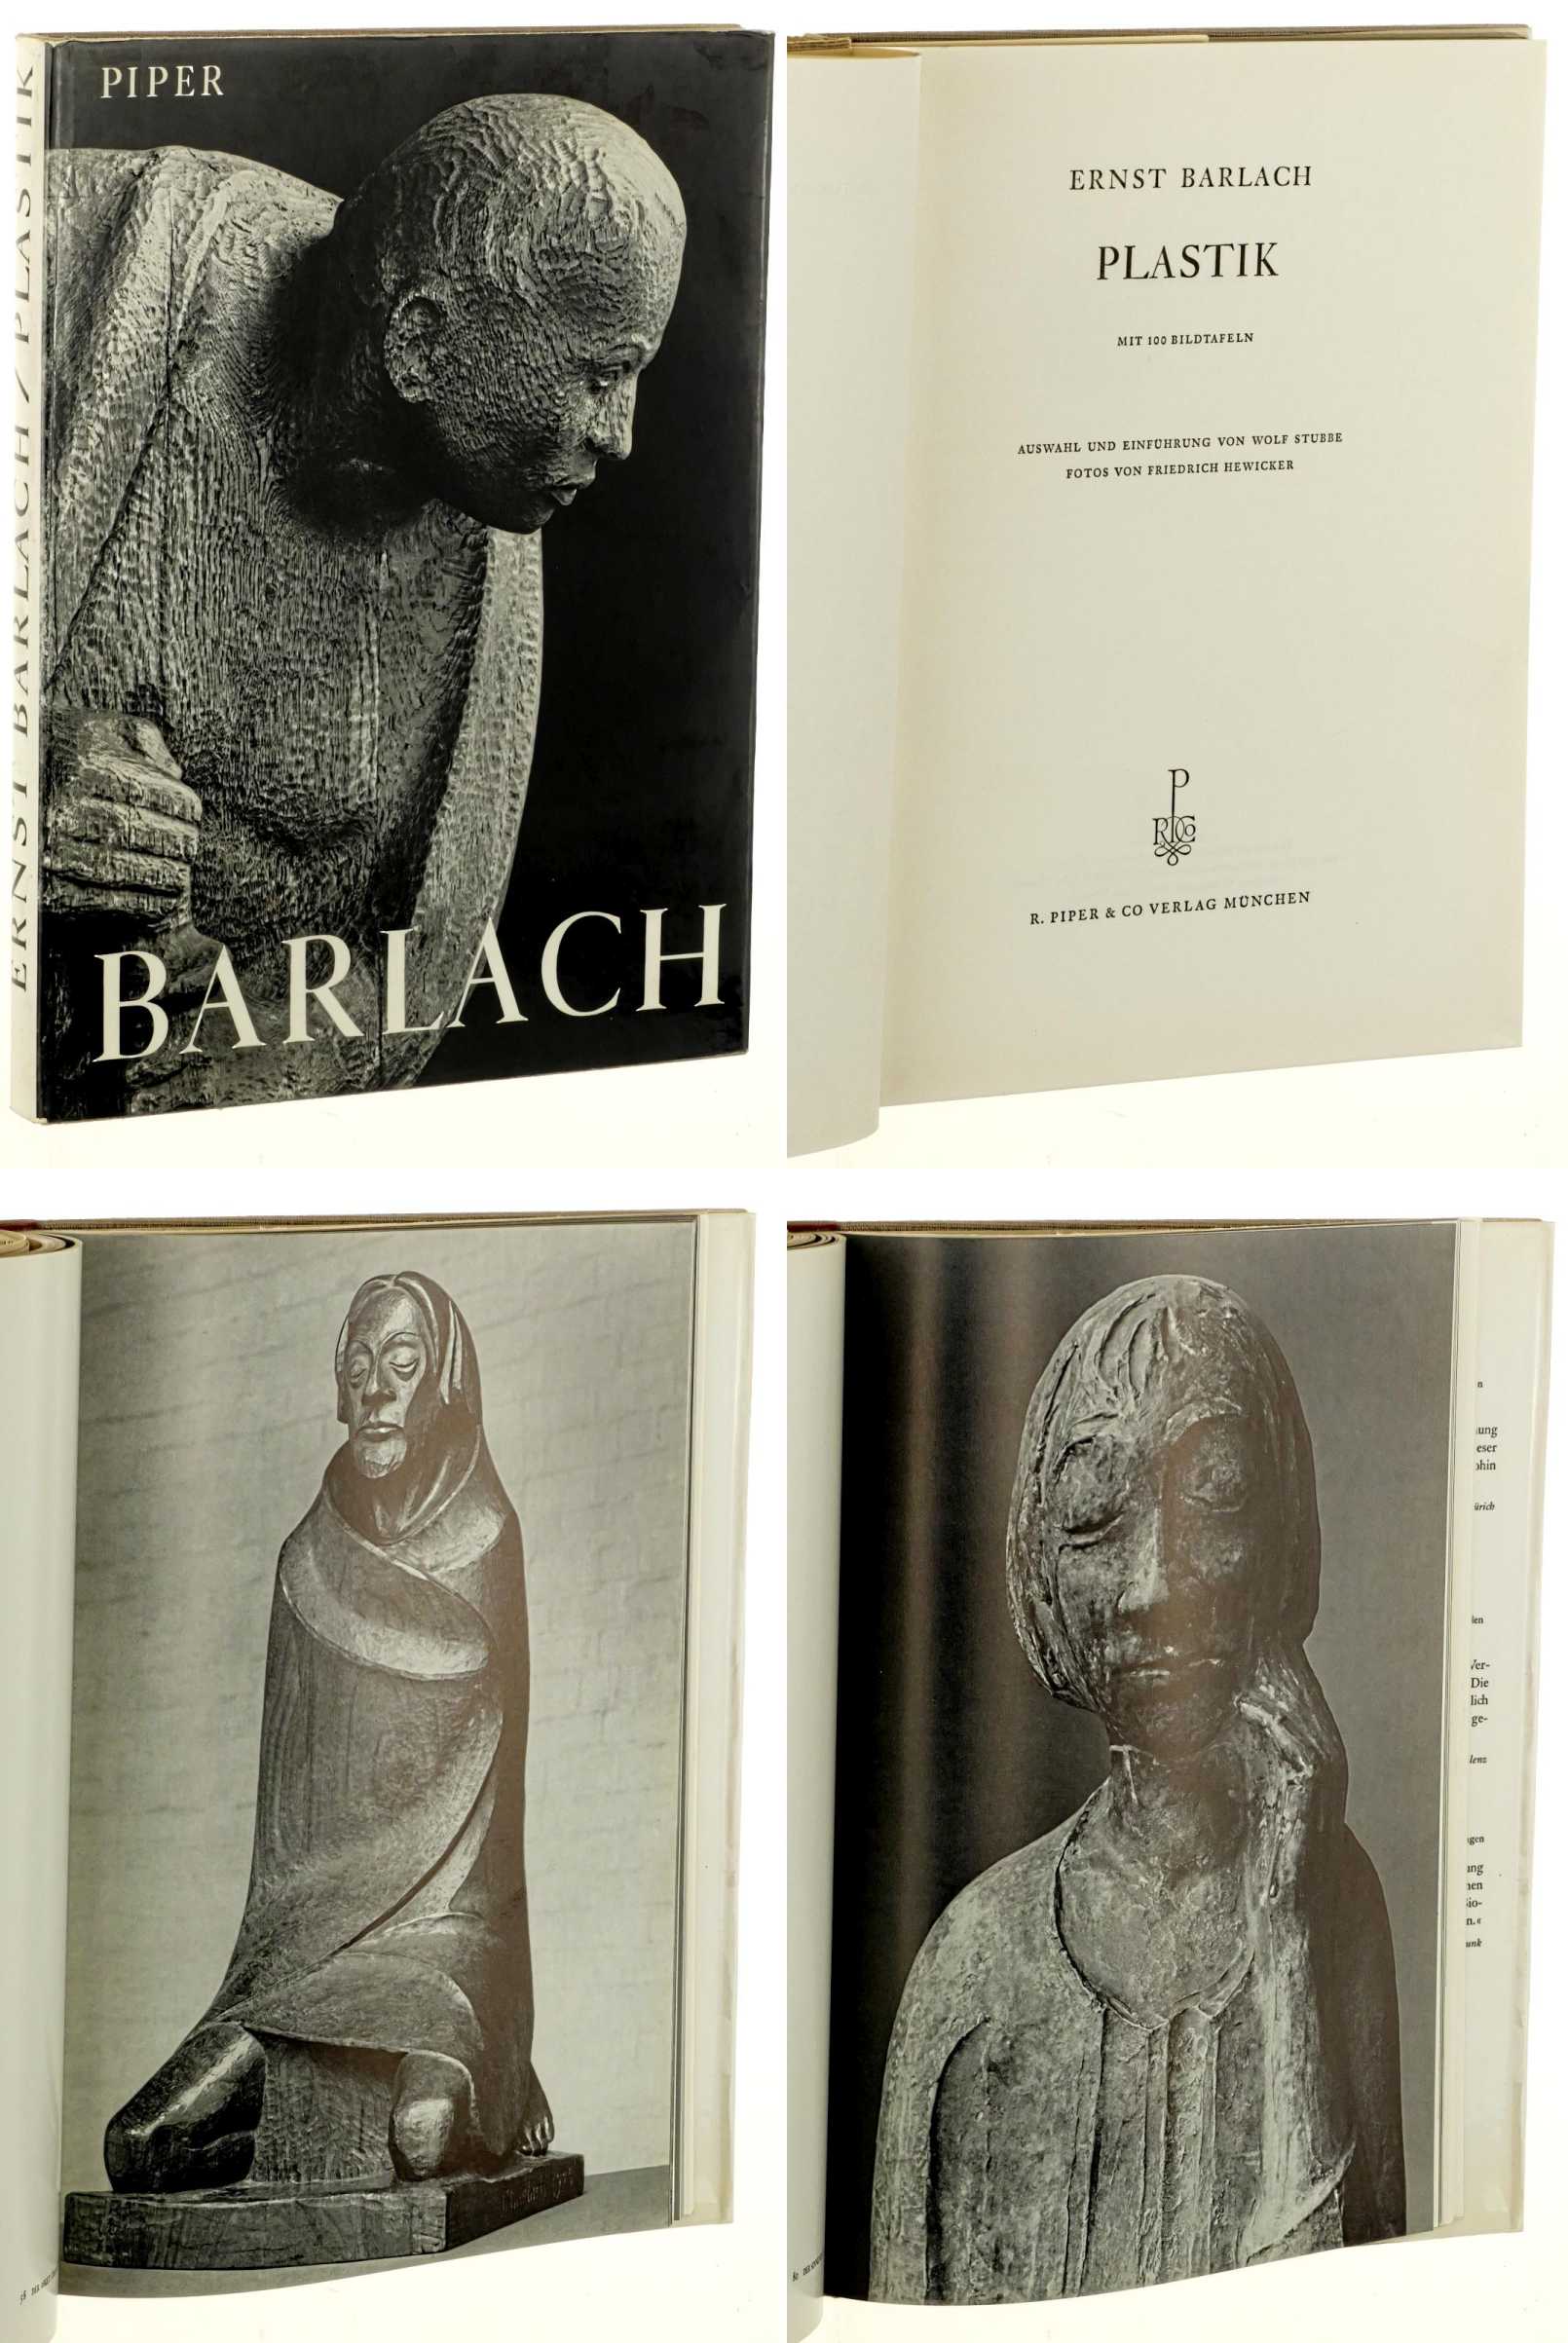   Ernst Barlach, Plastik. Mit 100 Bildtafeln. Fotos von Friedrich Hewicker. Einführung von Wolf Stubbe. 